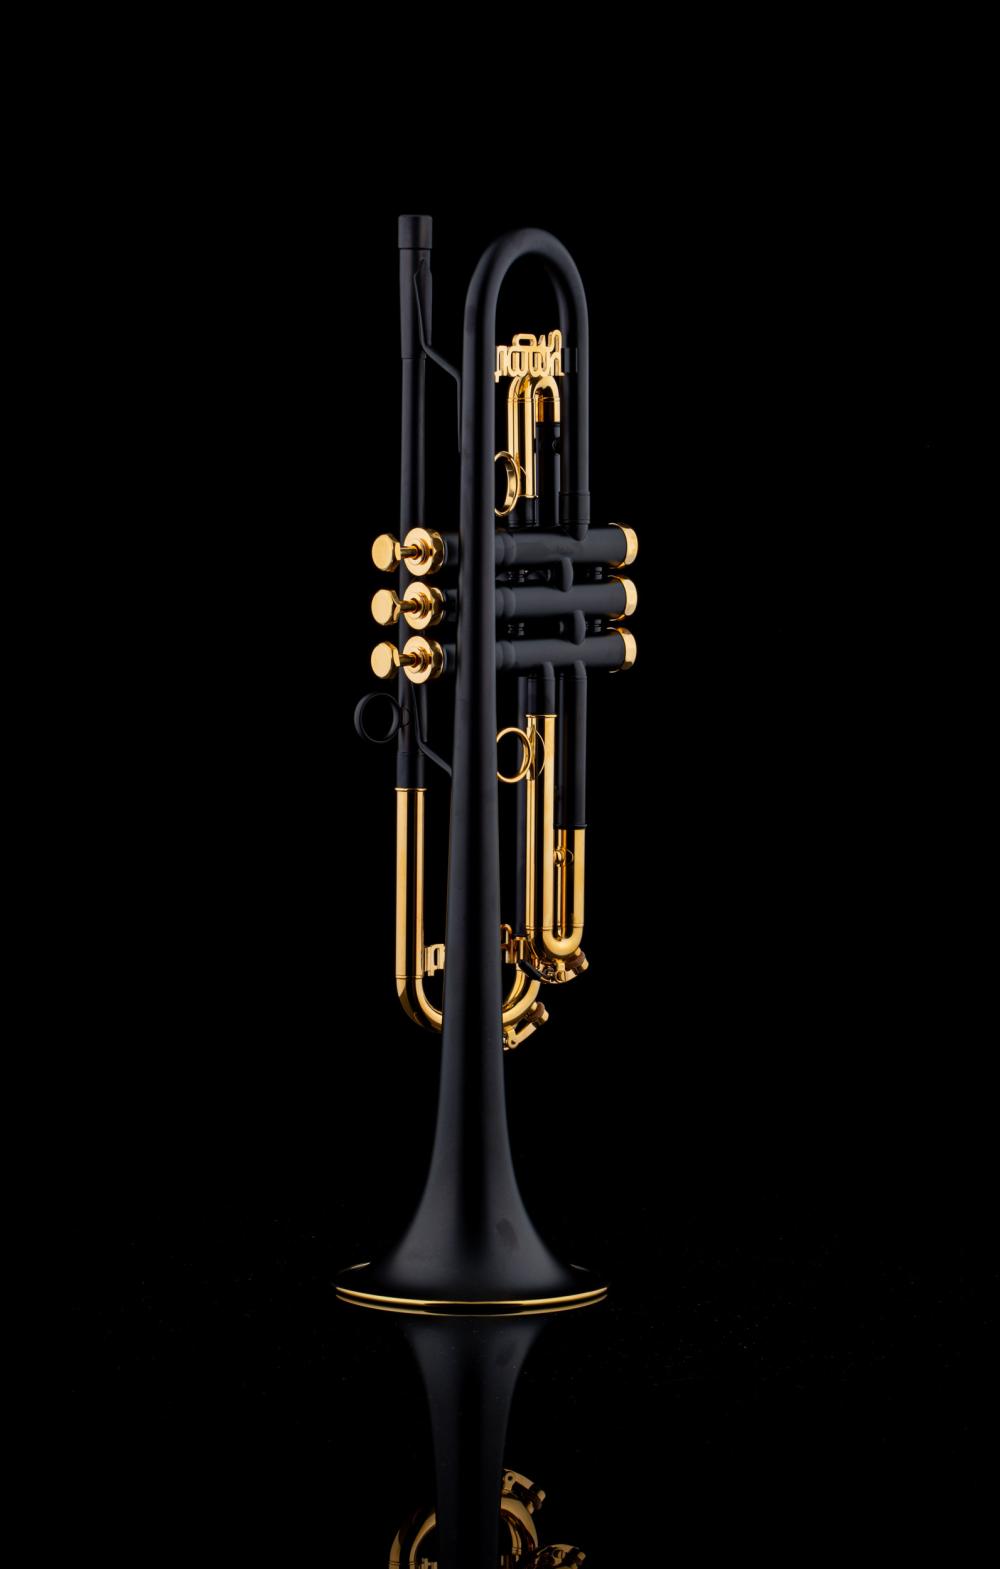 Schagerl Signature B-Trompete Timmy Trumpet bei schagerl.com kaufen